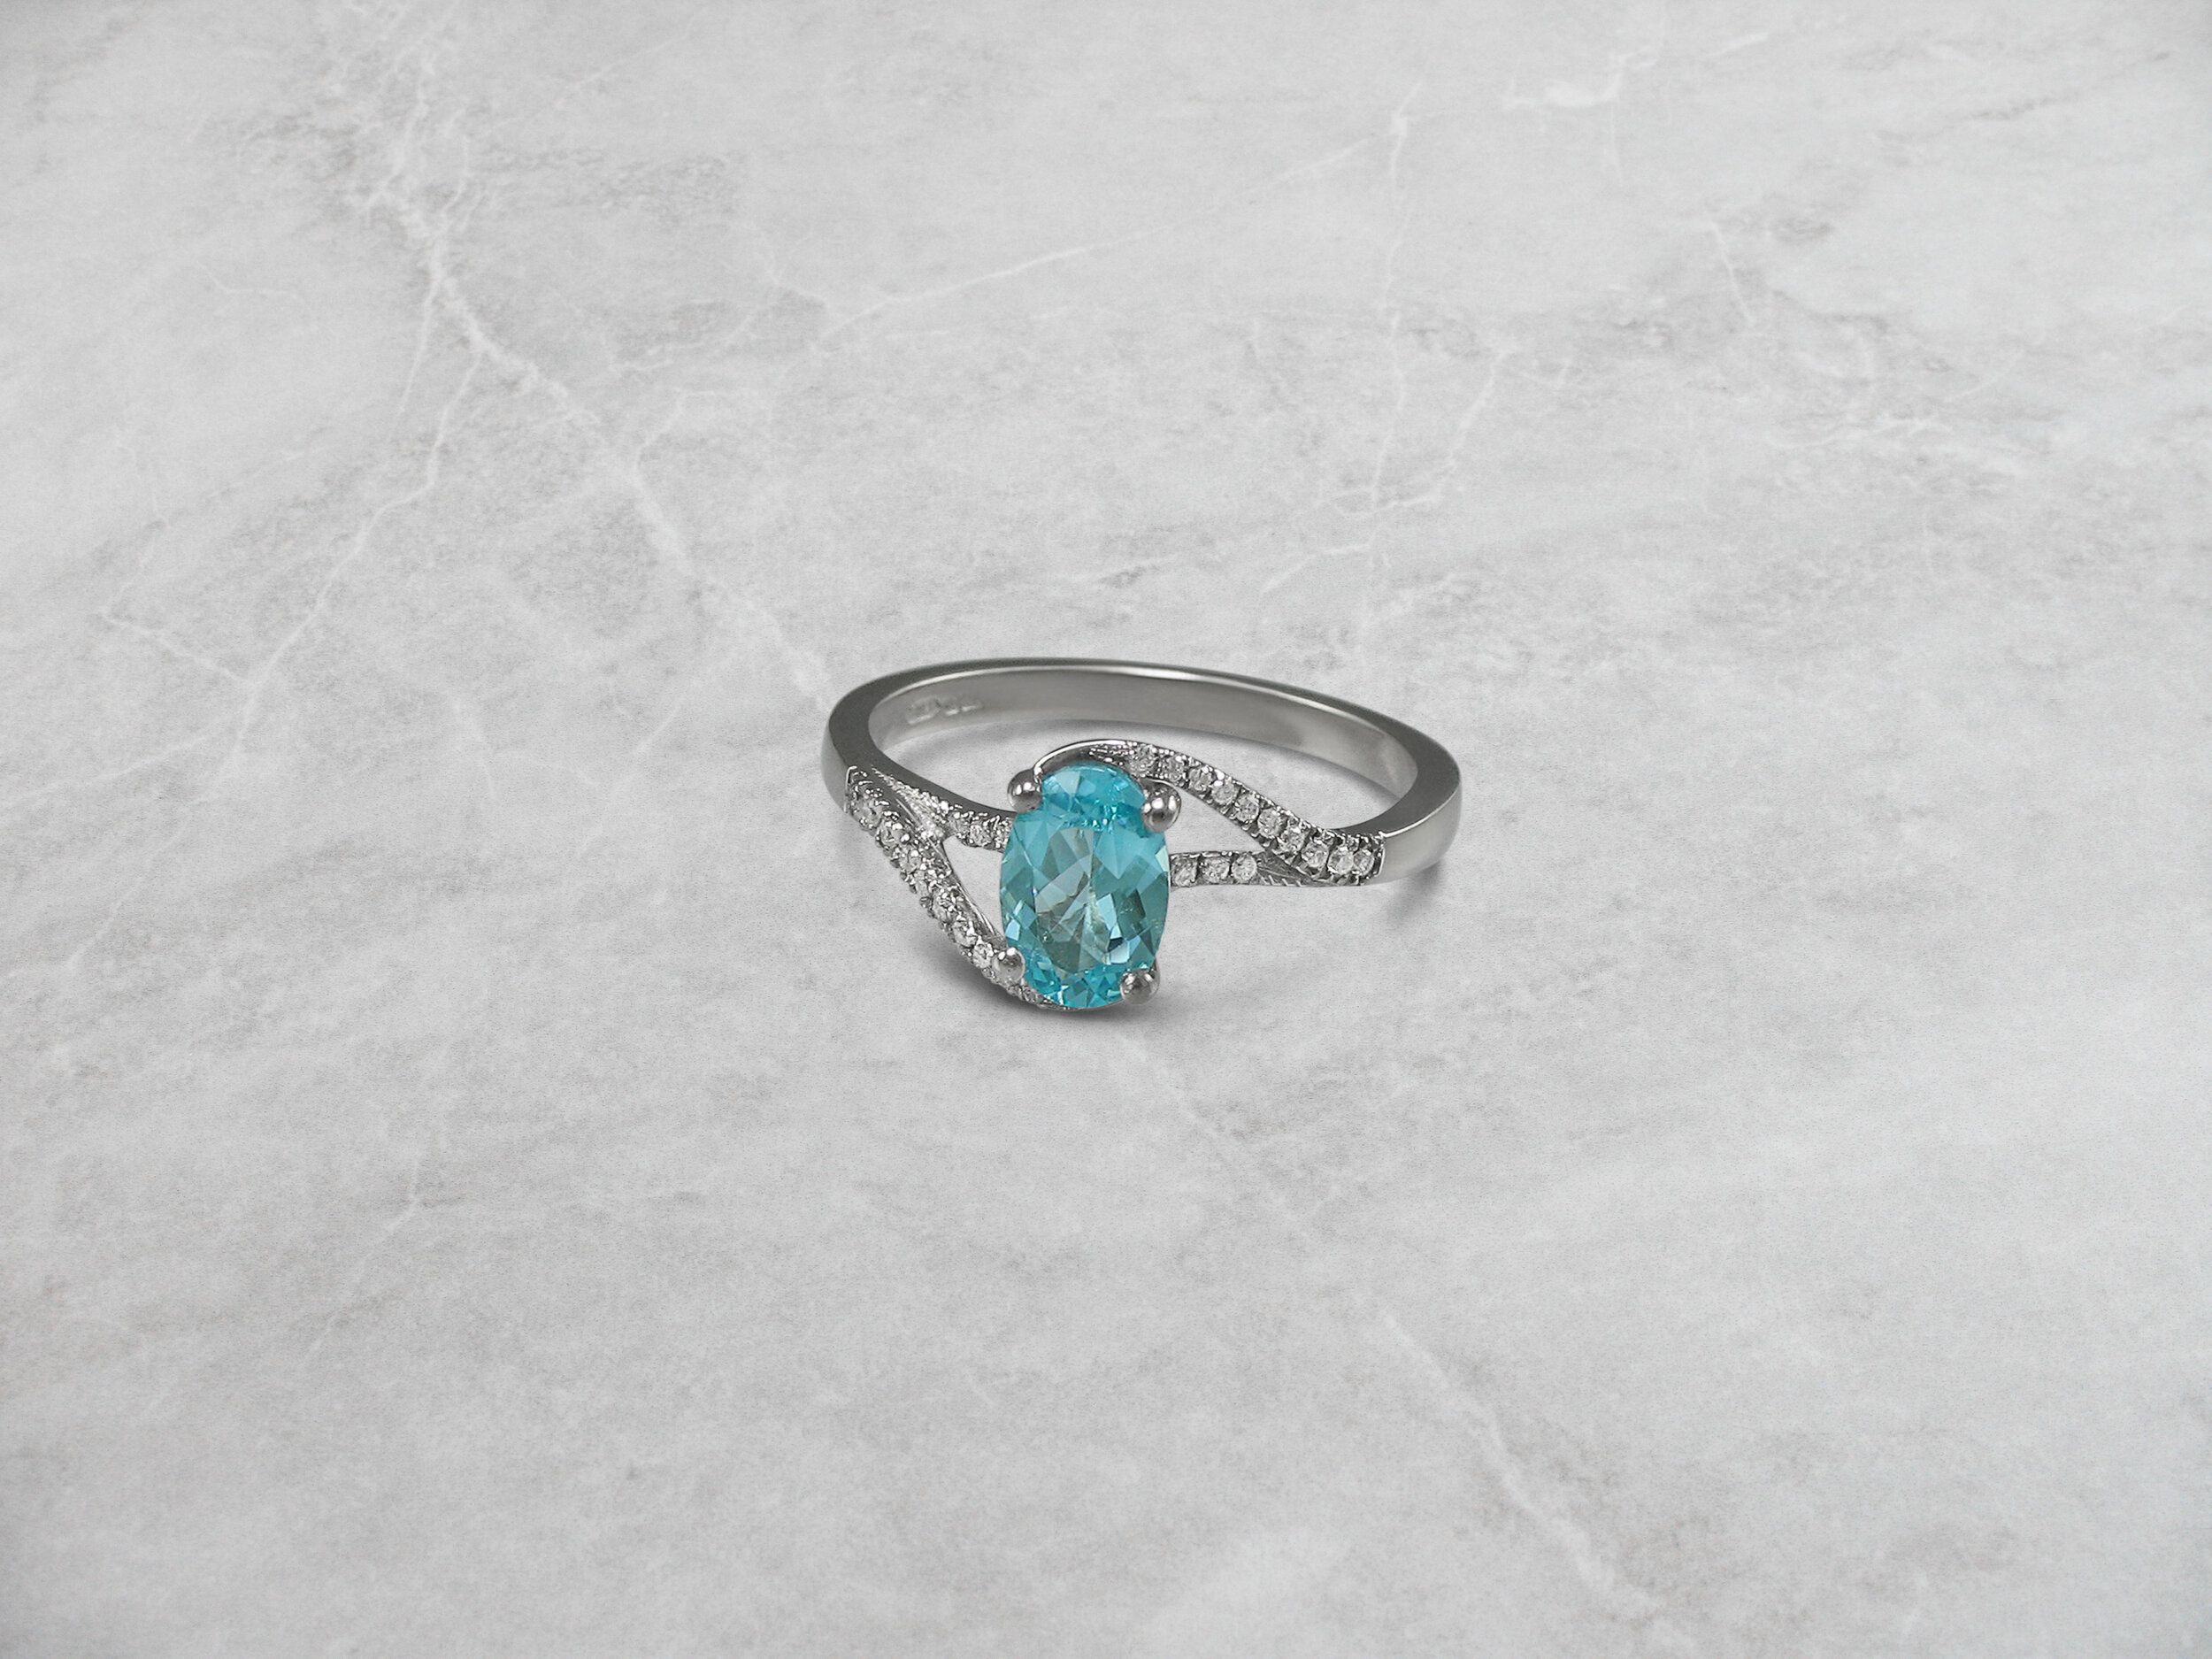 Paraiba tourmaline and diamond ring